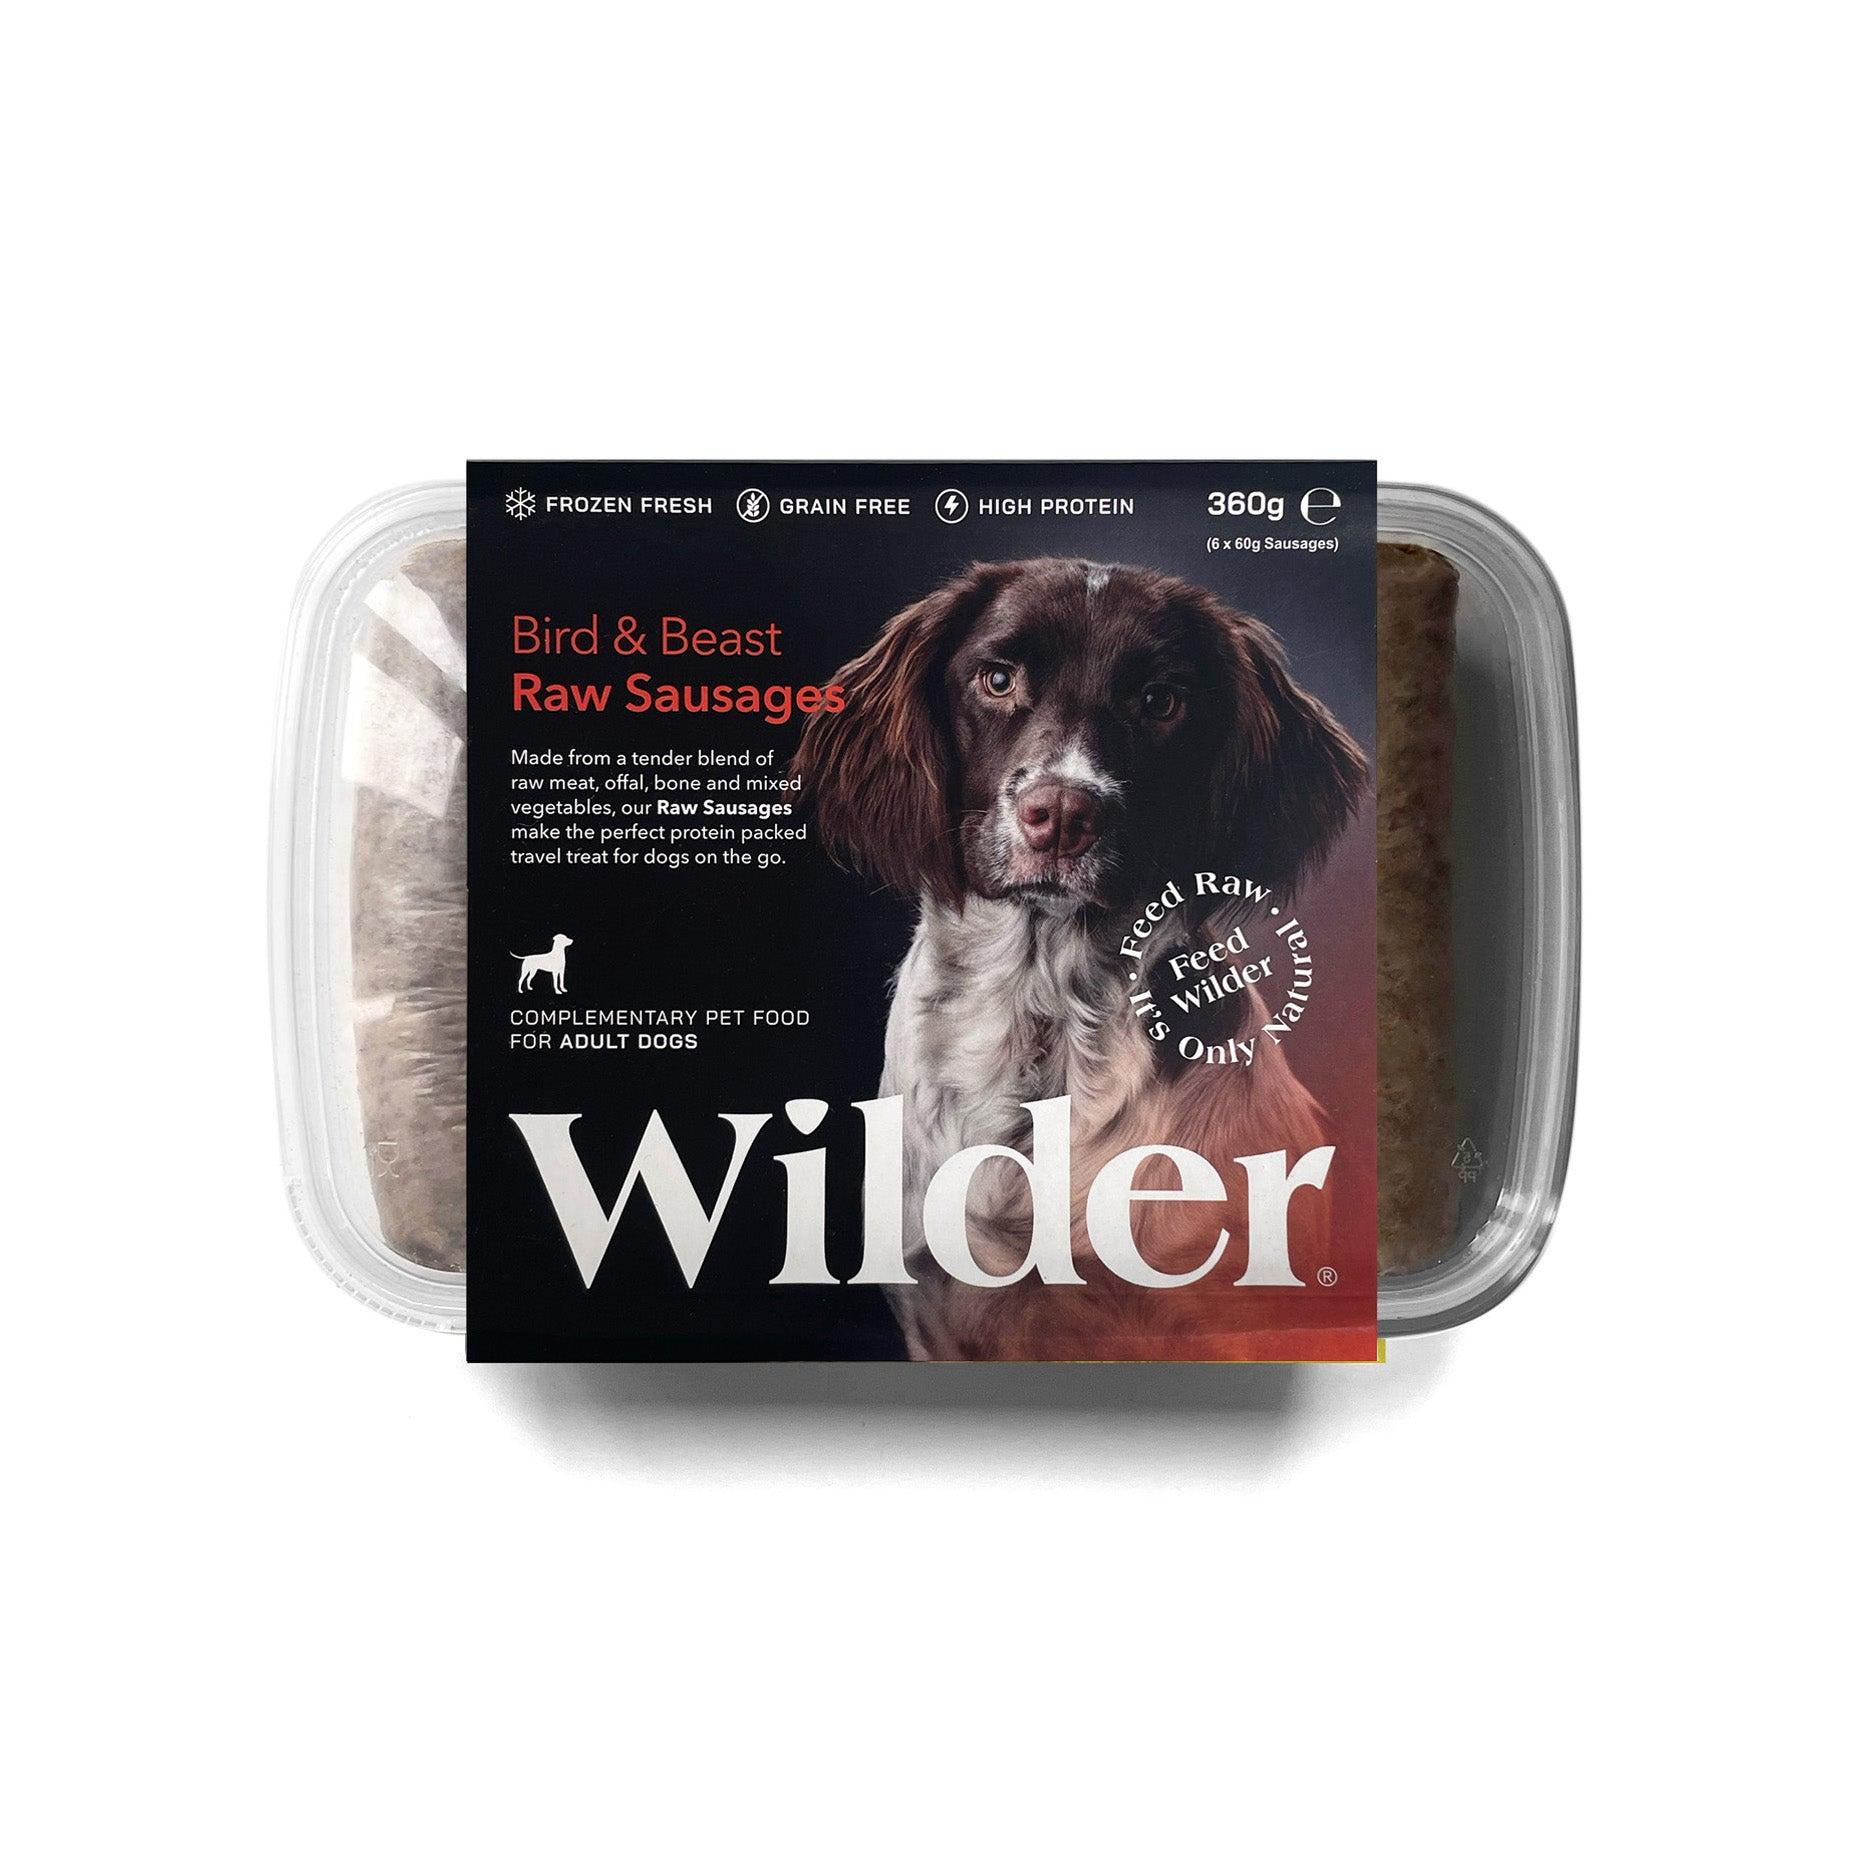 Wilder Bird & Beast Raw Sausages 360g Pack Orange Label